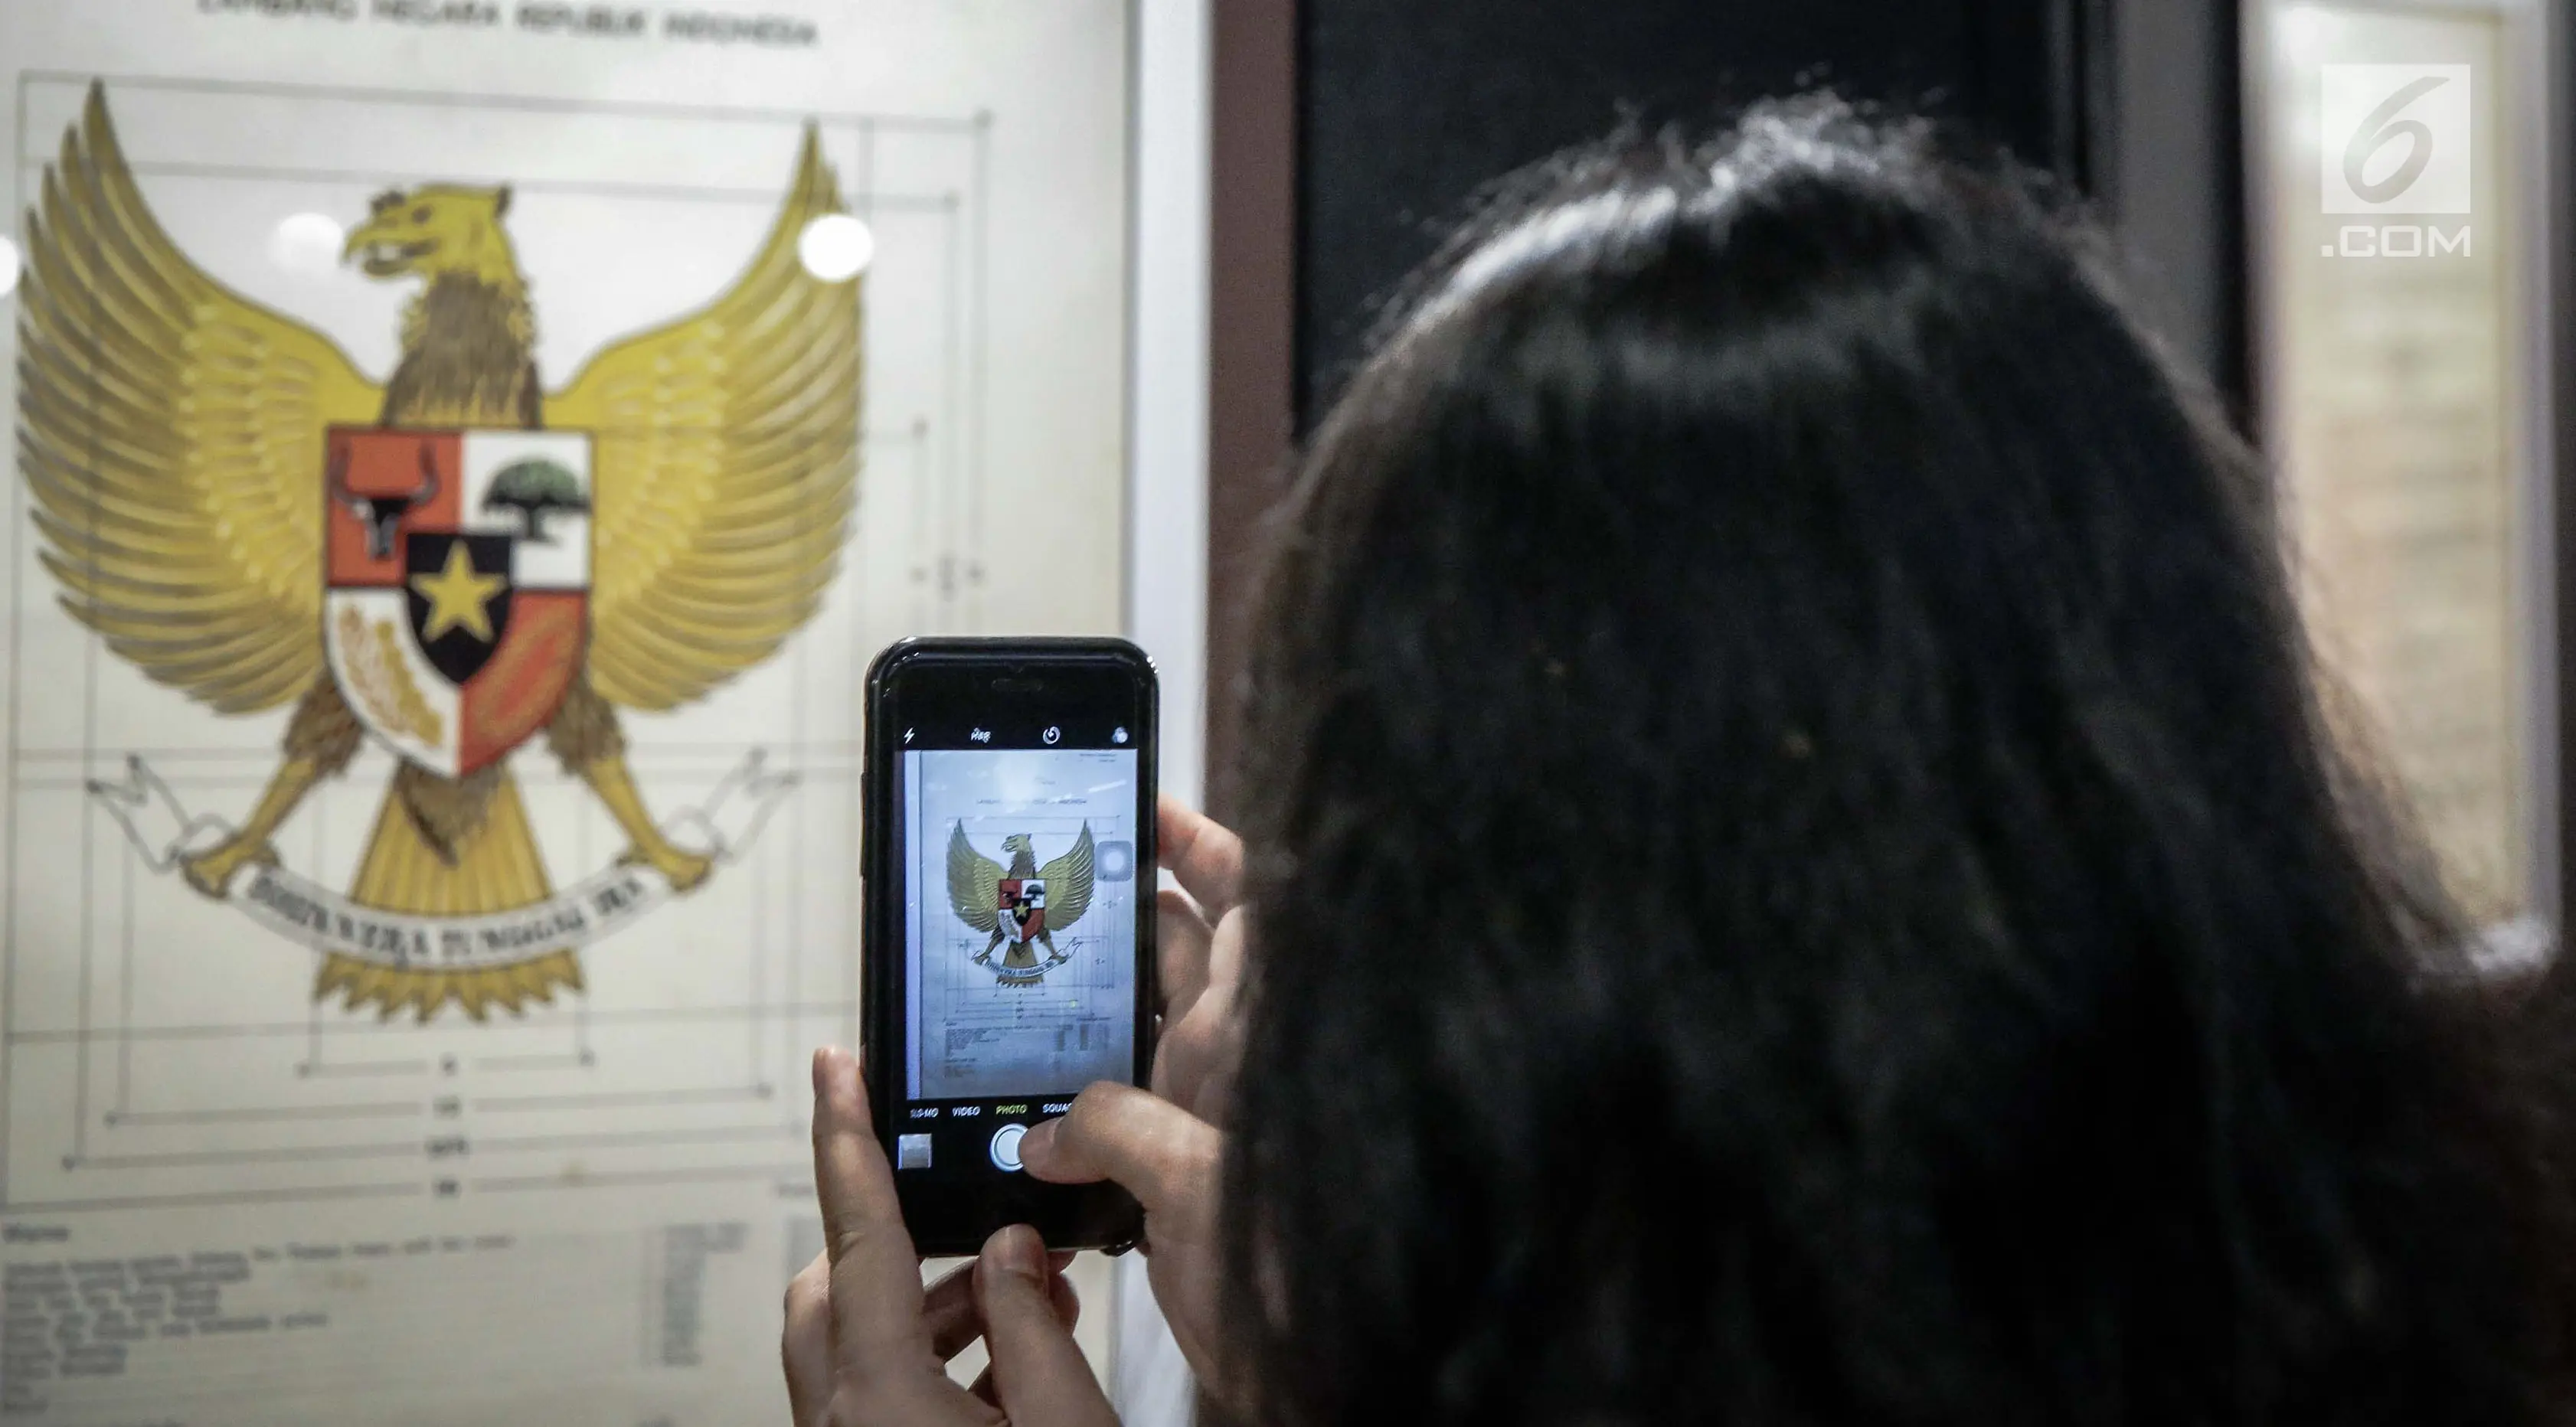 Pengunjung mengabadikan lambang Garuda di Museum Nasional, Jakarta, Jumat (2/6). Pameran digelar dari 2 hingga 15 Juni 2017, sebagai rangkaian kegiatan hari kelahiran Pancasila yang jatuh tanggal 1 Juni. (Liputan6.com/Faizal Fanani)